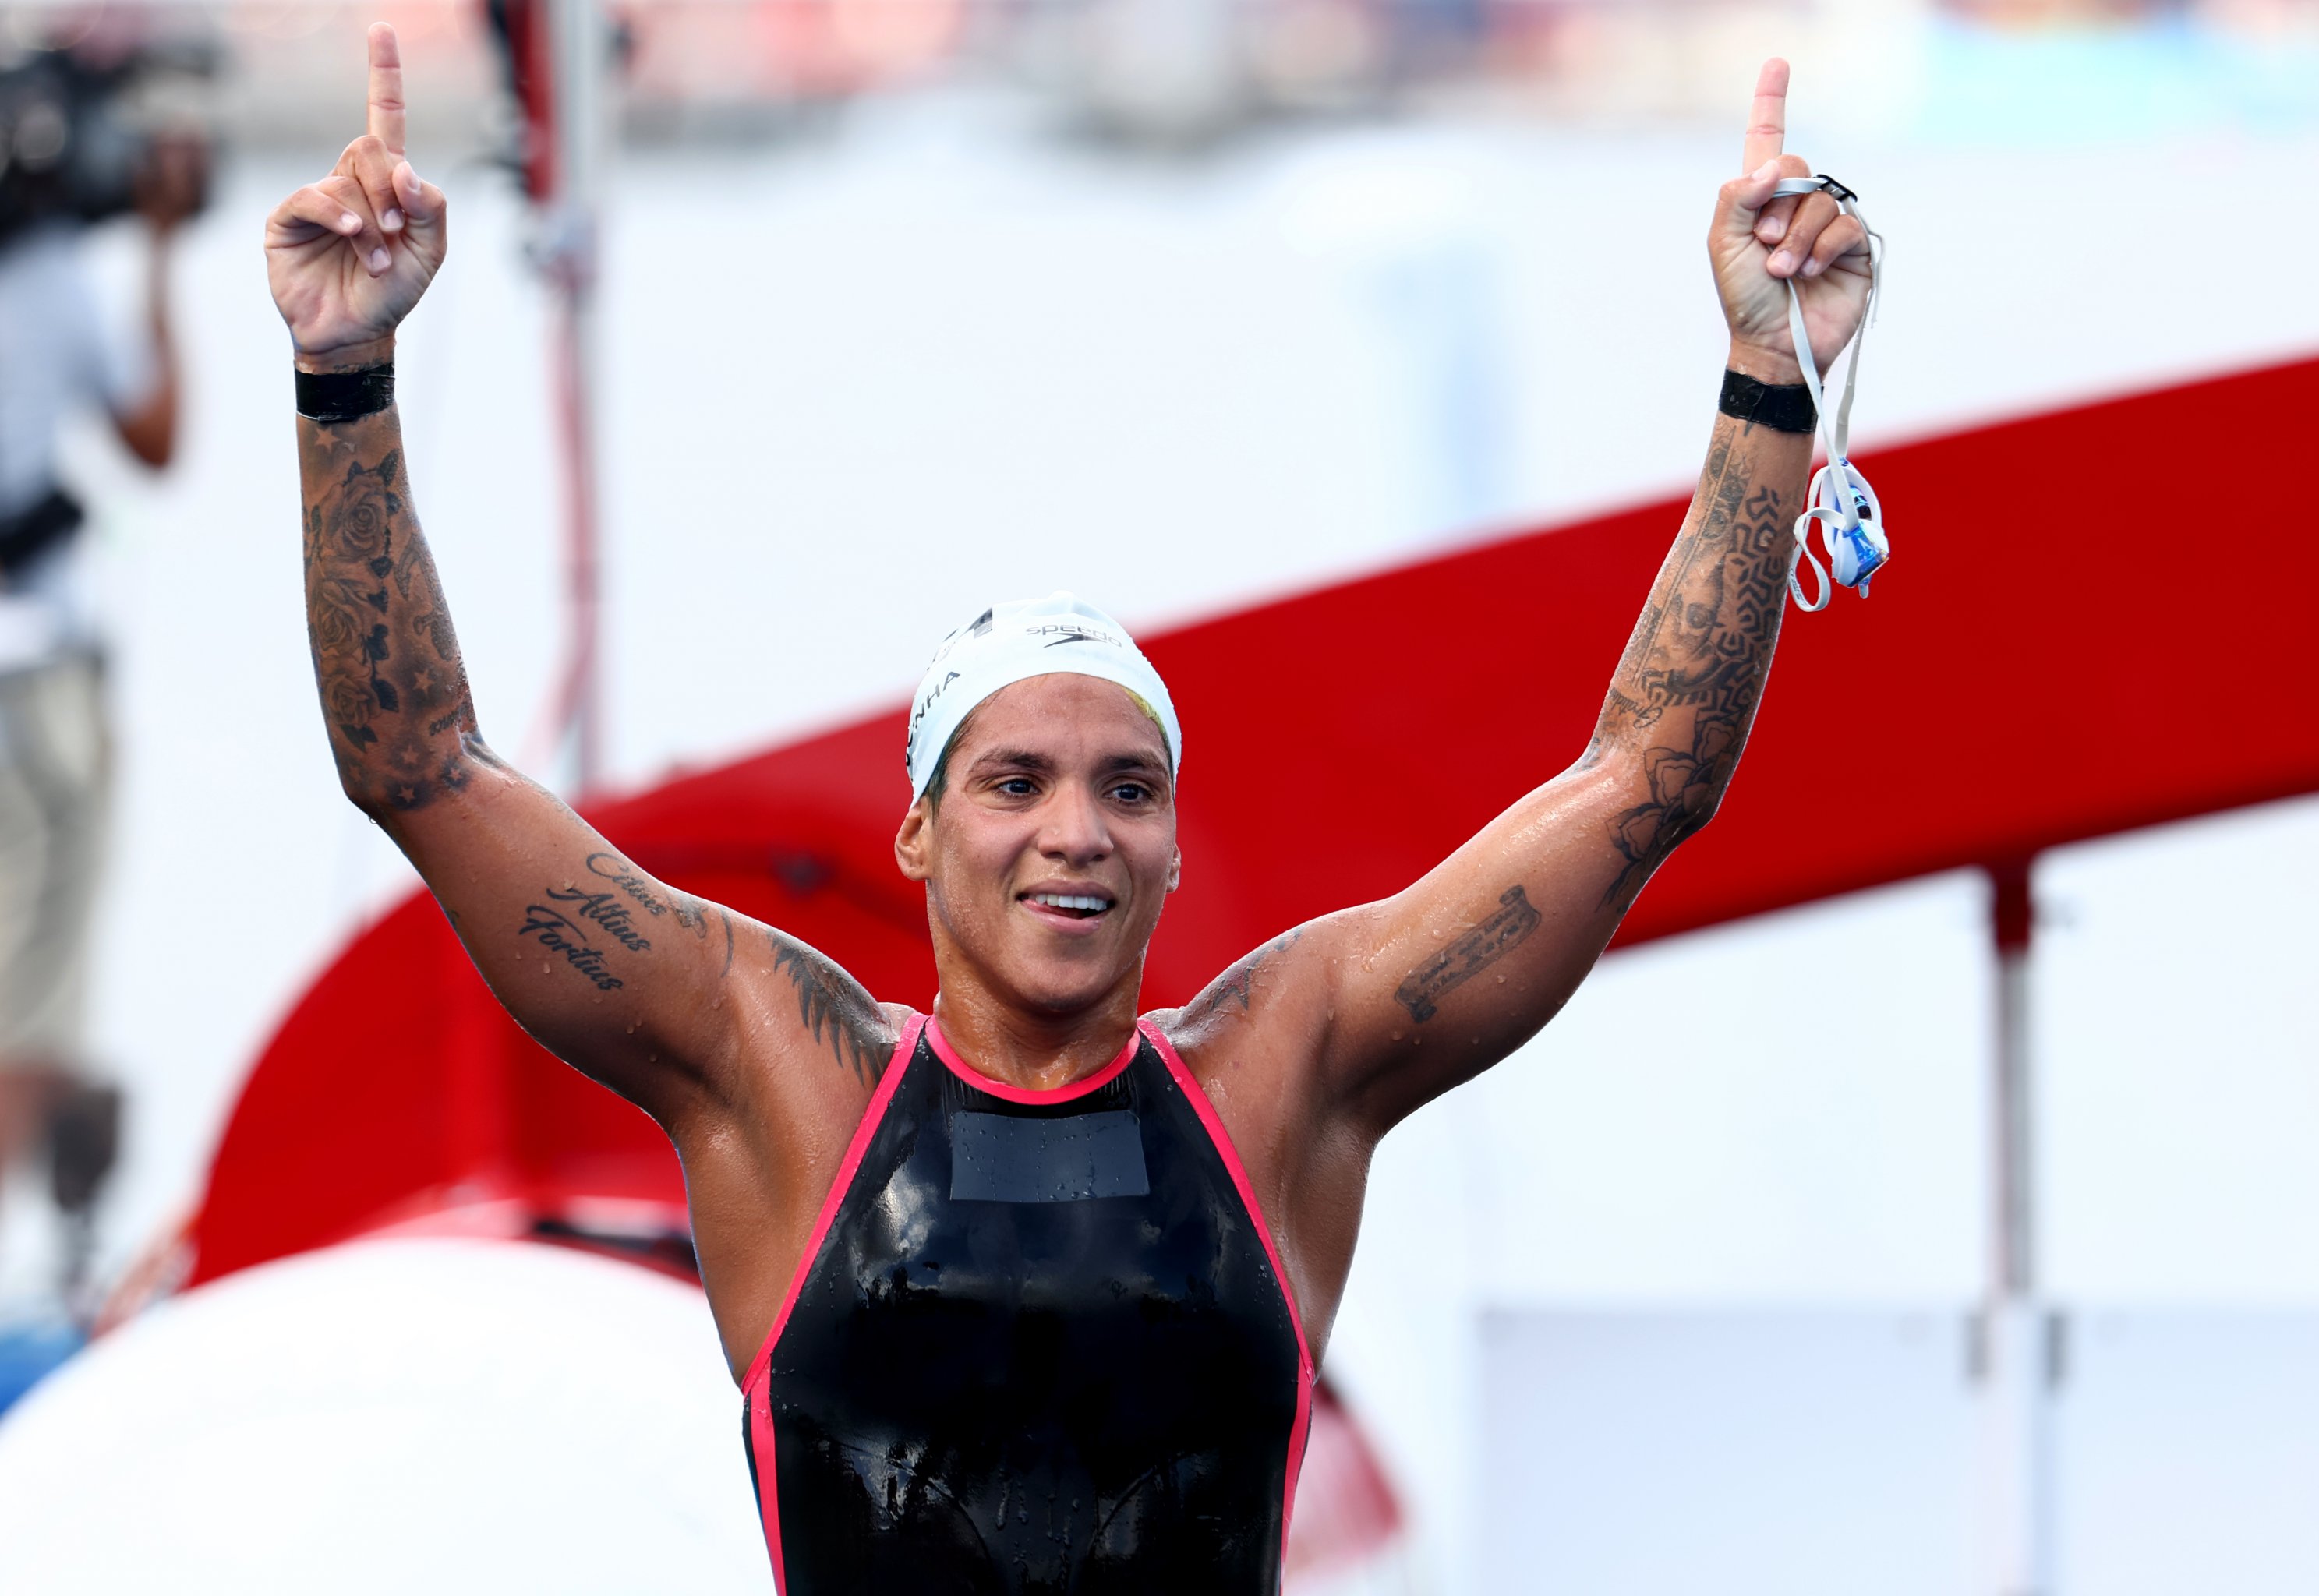 Brazilian Ana Marcela named world's best open water swimmer